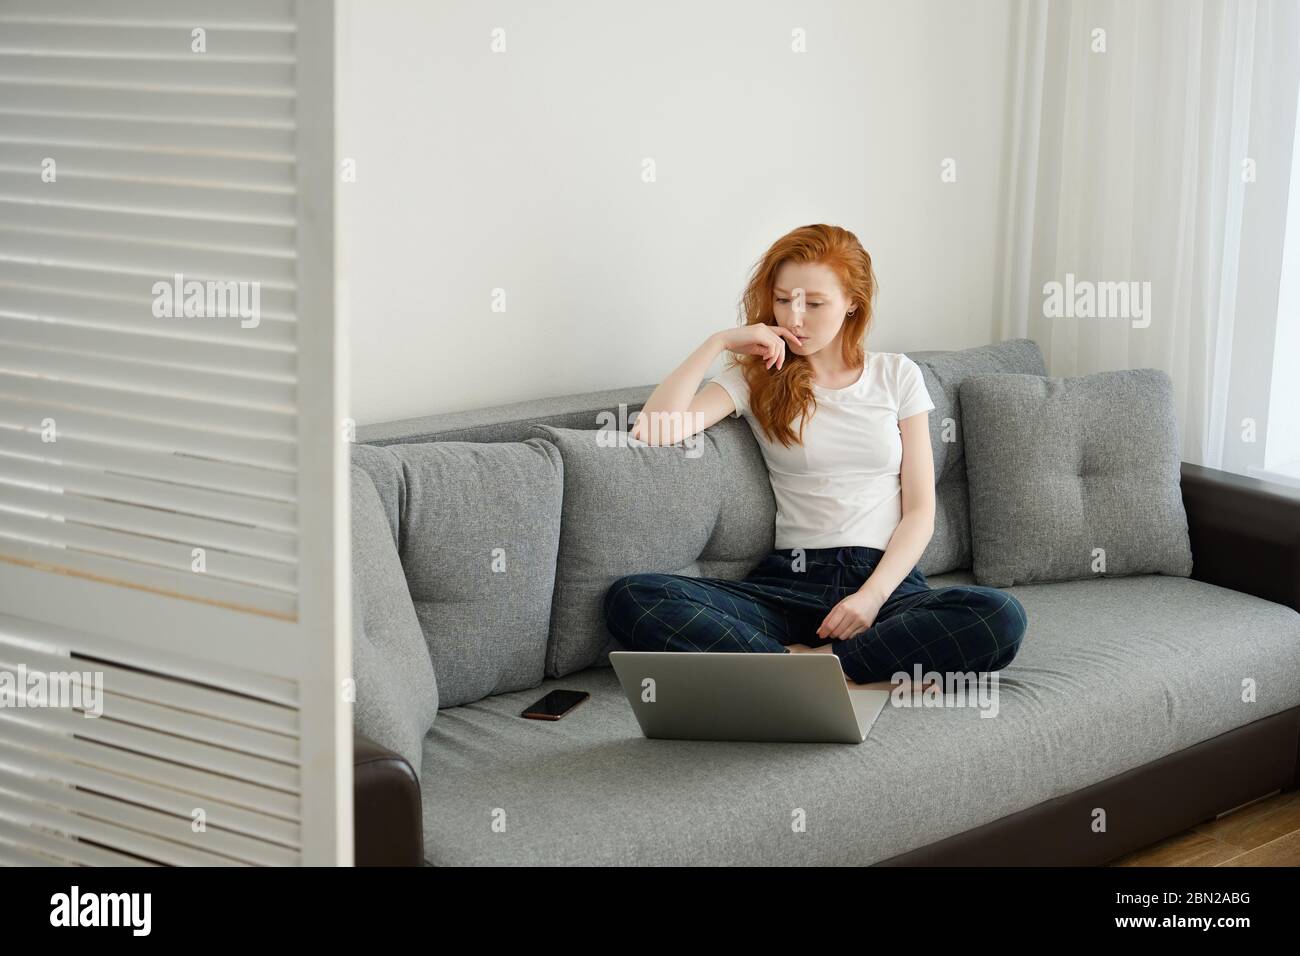 Ein rothaariges Mädchen in Heimkleidung sitzt auf einem Sofa und sieht nachdenklich in einen Laptop vor ihr. Stockfoto